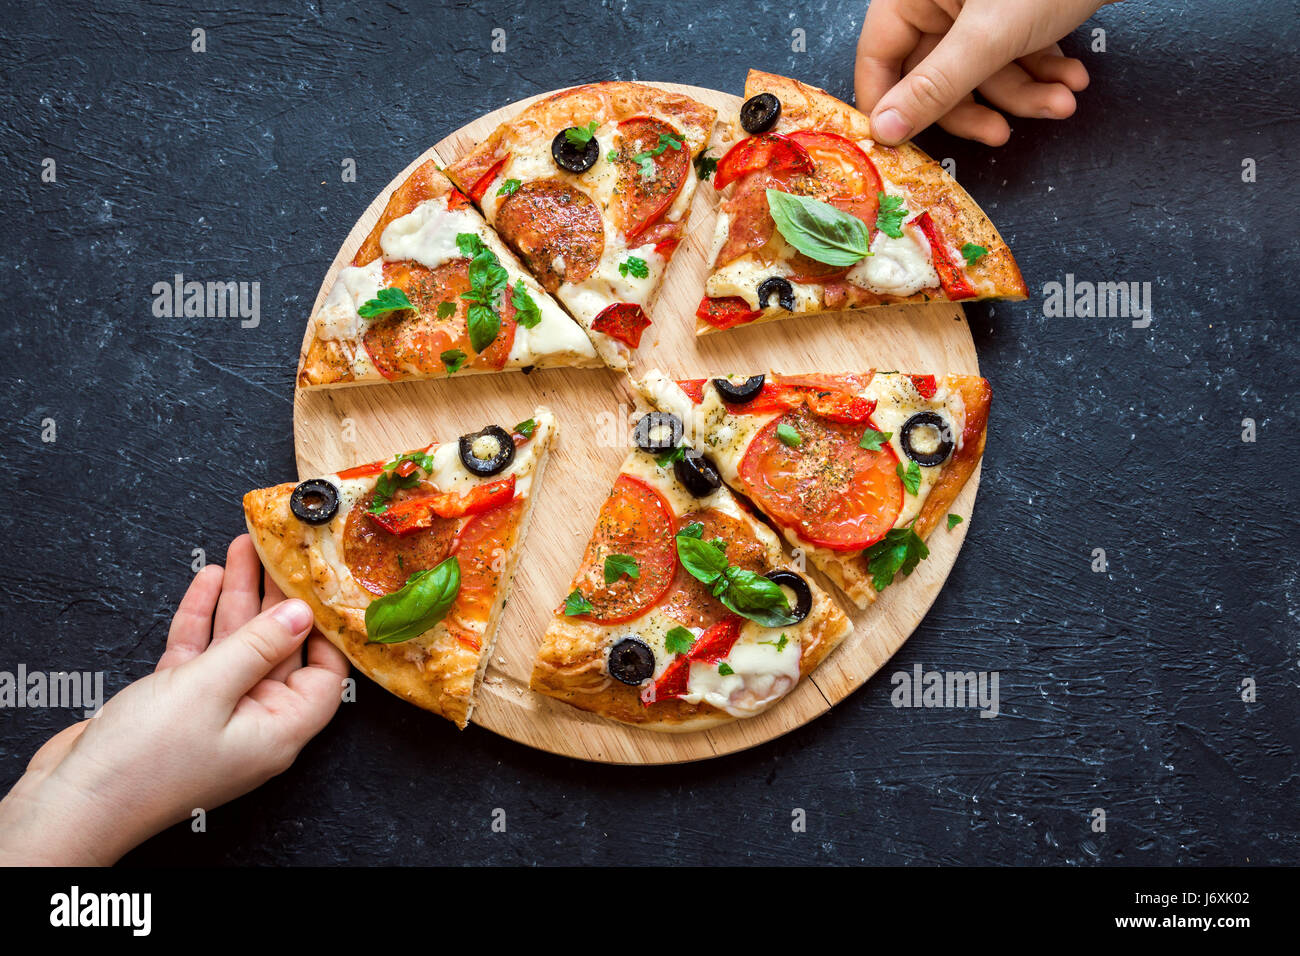 Menschen Hände nehmen Scheiben der italienischen Pizza. Italienische Pizza und Hände hautnah auf schwarzem Hintergrund. Stockfoto